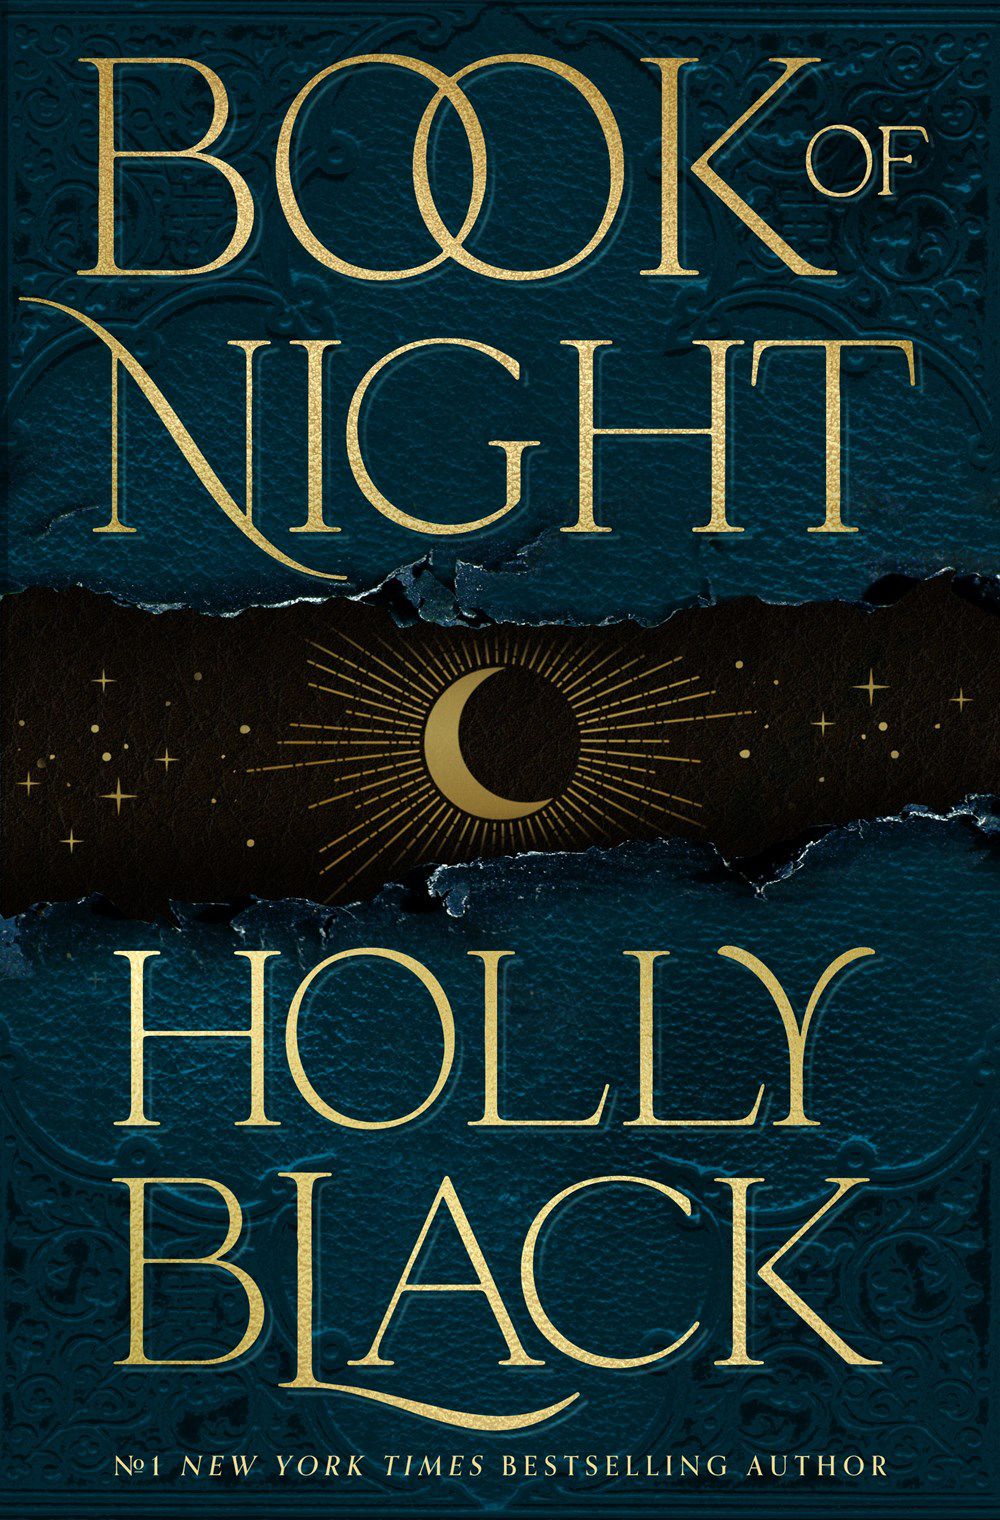 La copertina di Book of Night di Holly Black, con una mezzaluna incastonata su uno sfondo nero e blu.